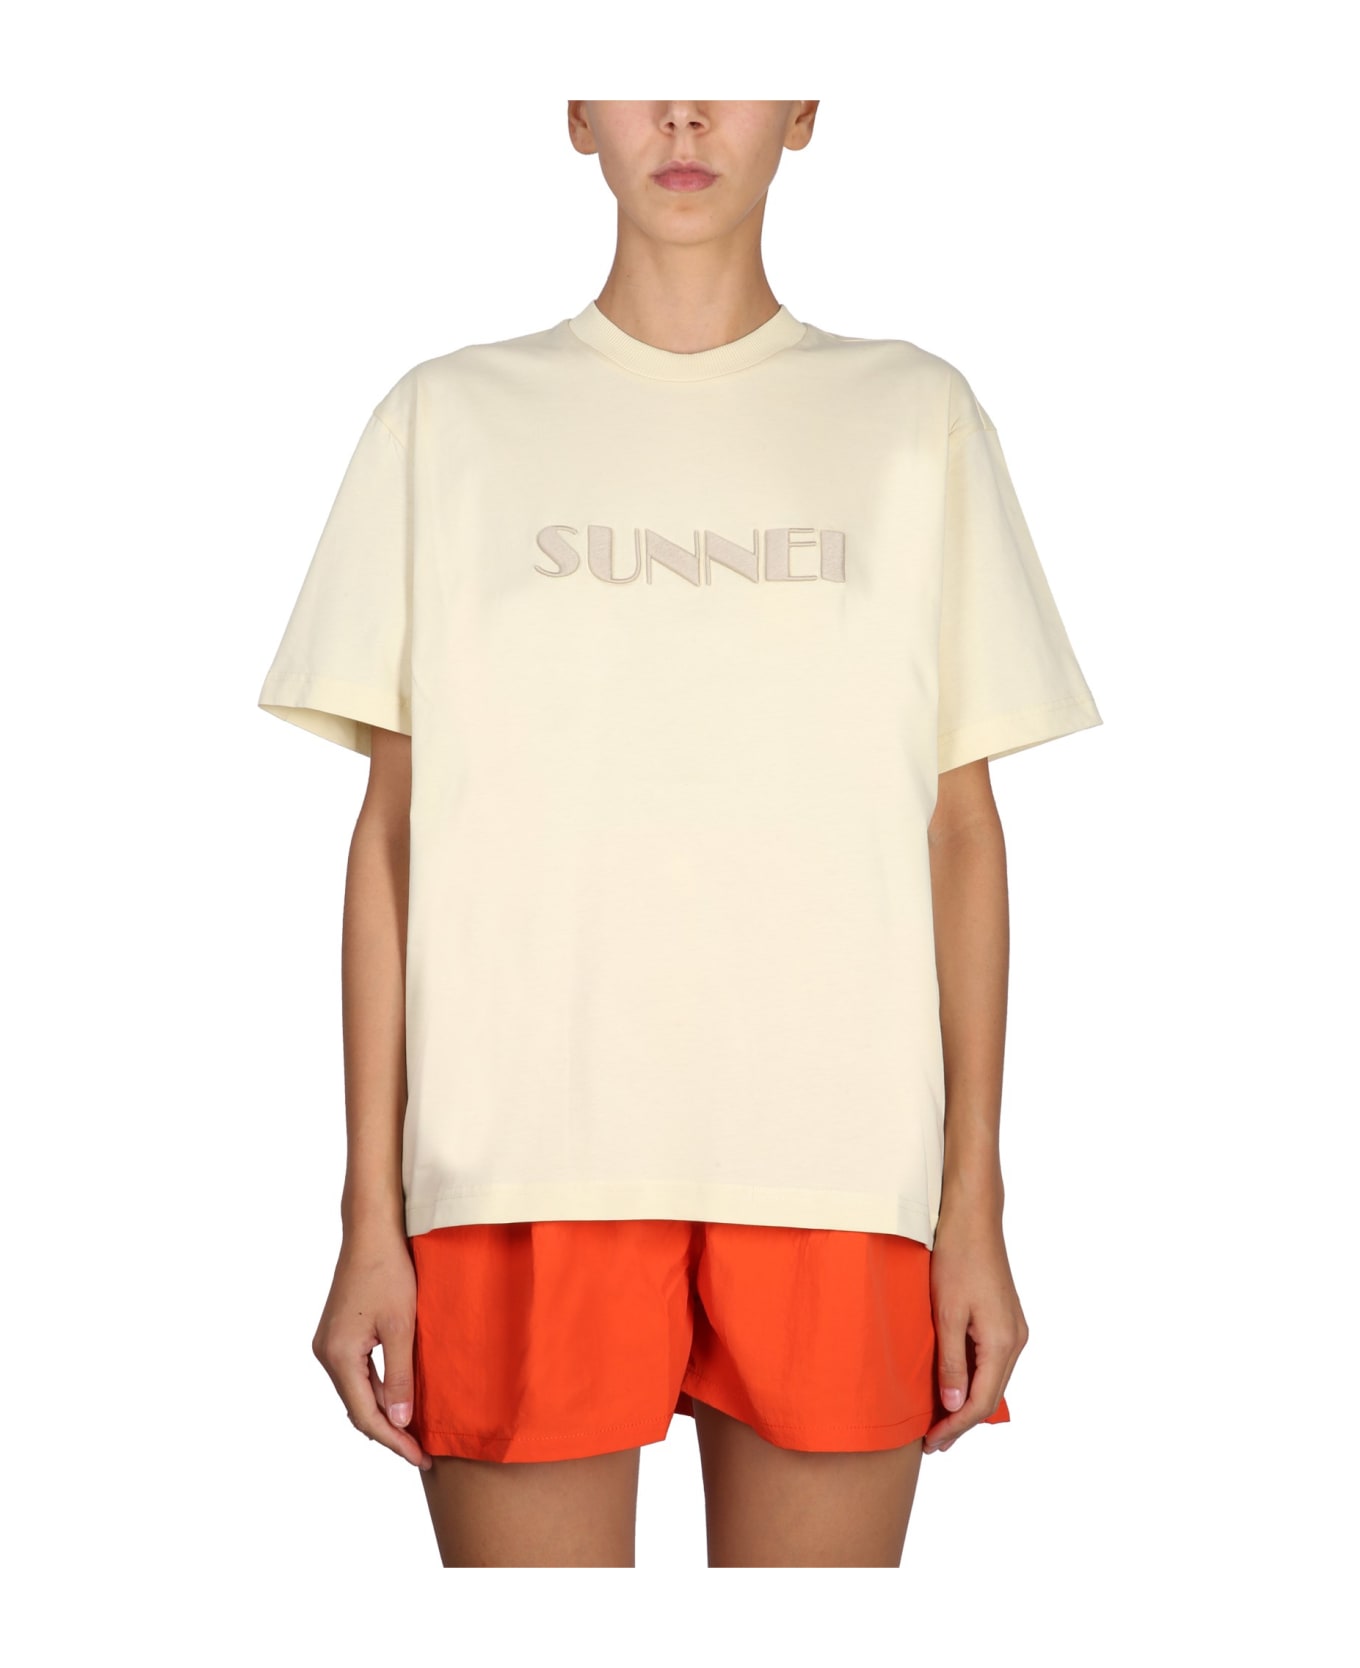 Sunnei Crewneck T-shirt - BEIGE